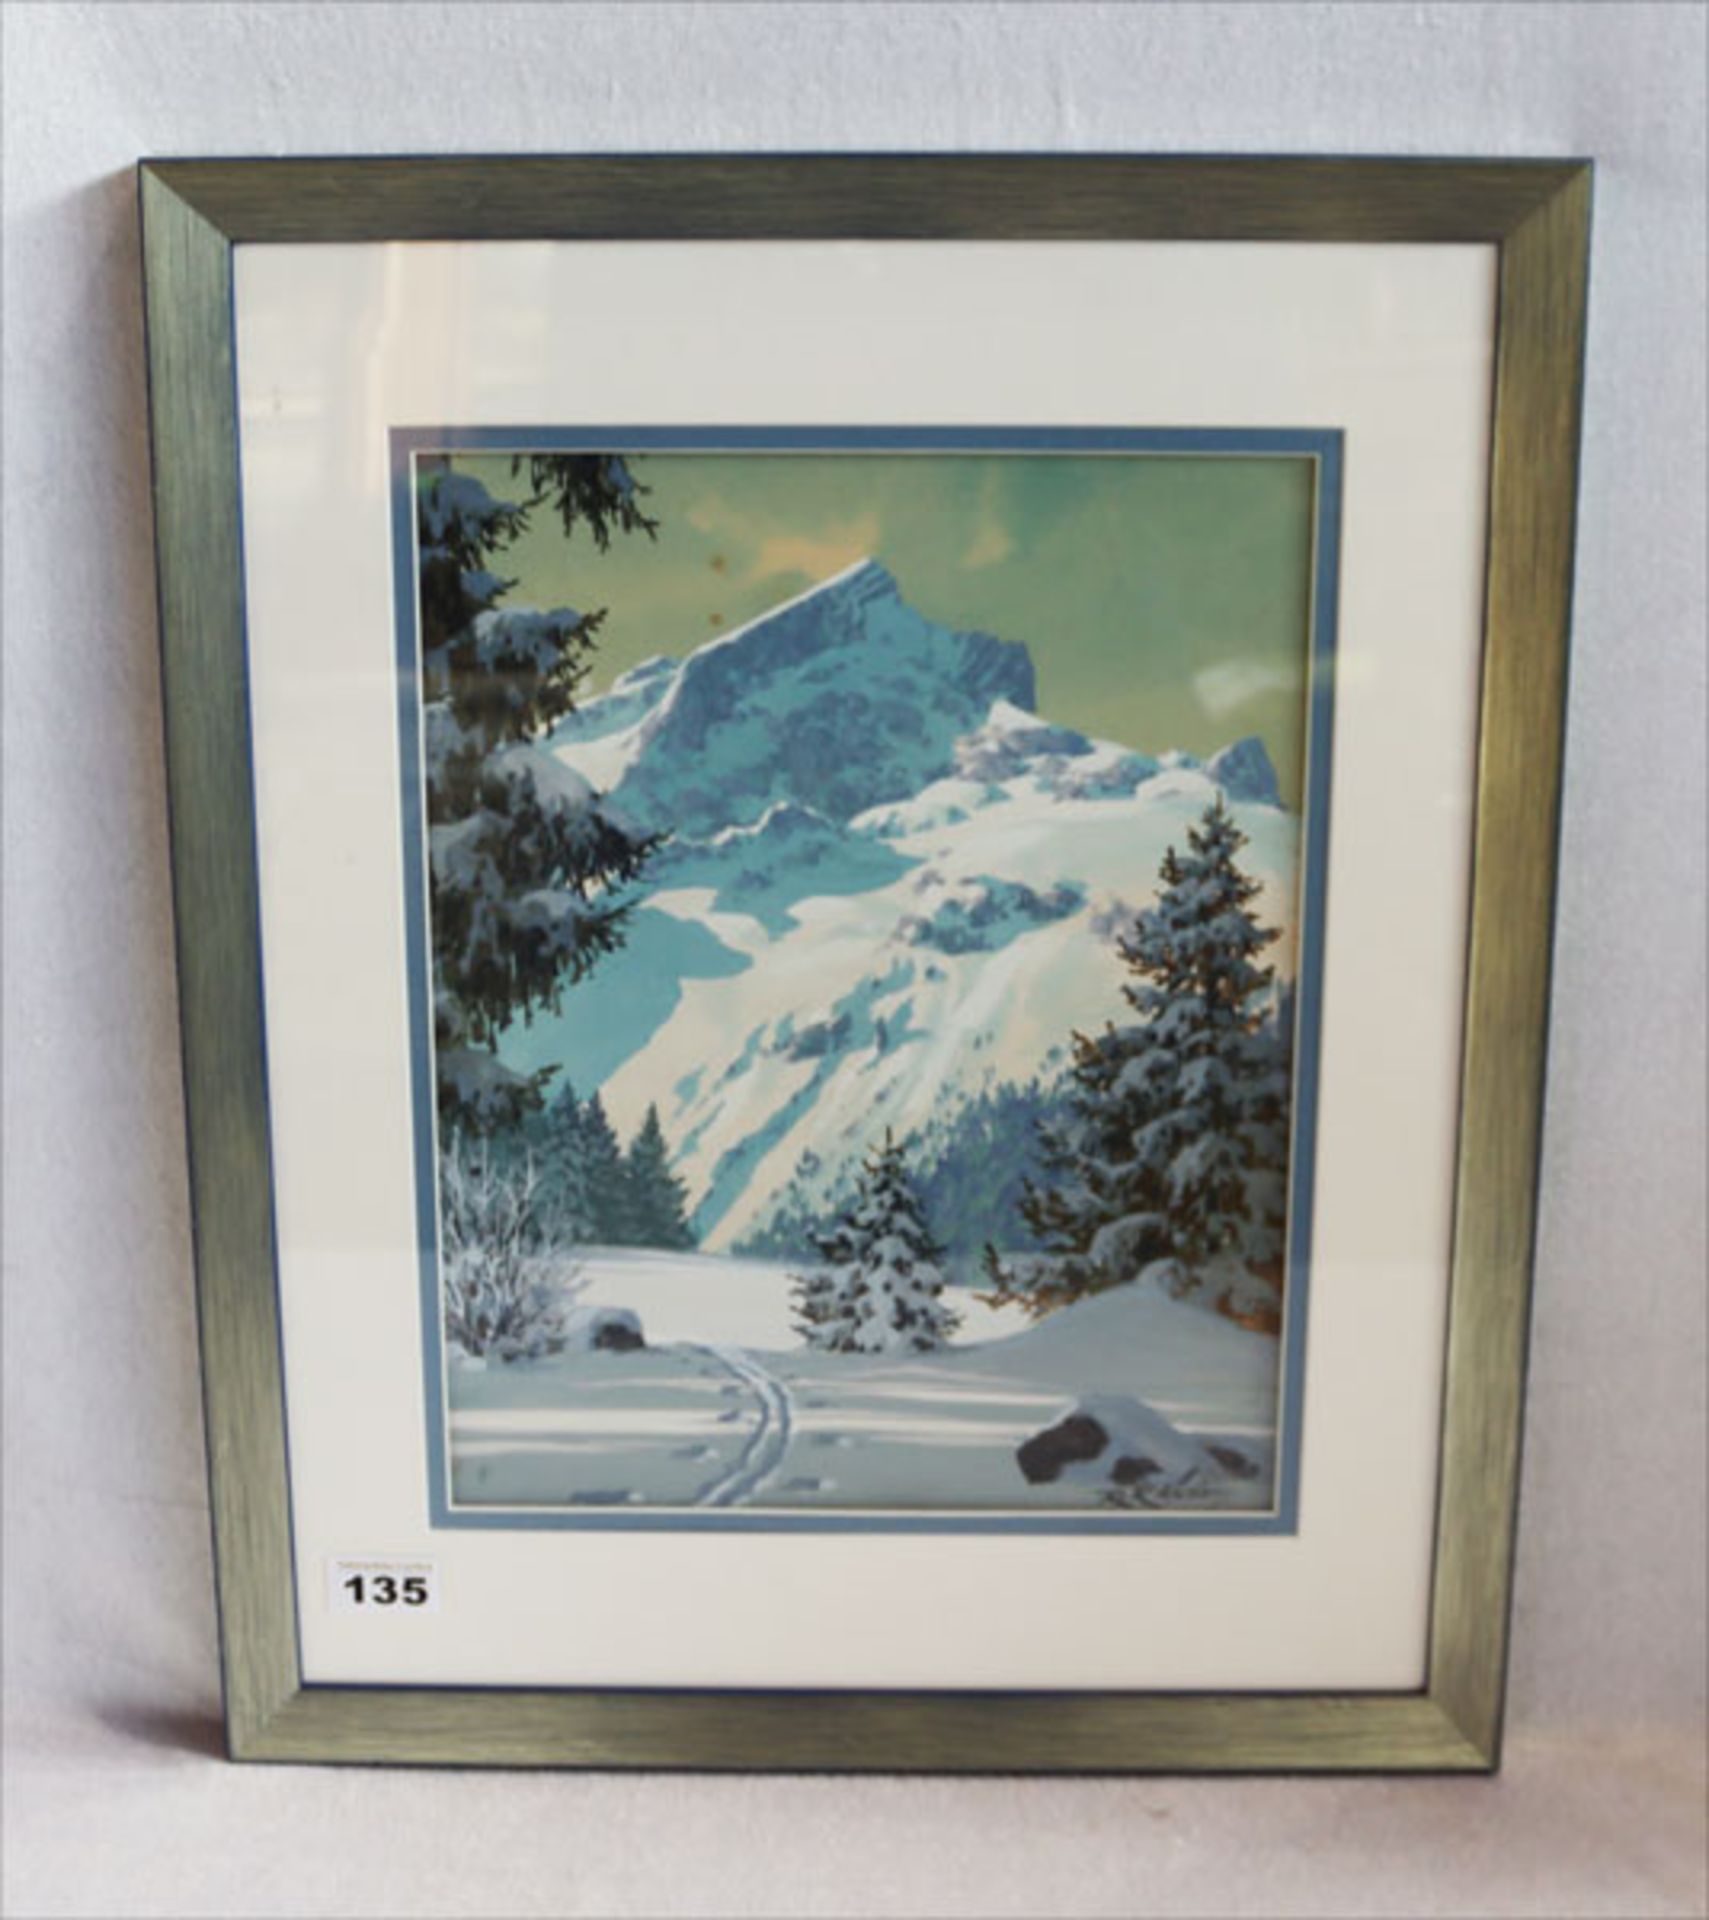 Gemälde Gouache auf Papier 'Alpspitze im Winter', signiert R. Klöden, Rudolf Emil Klöden, * 1892